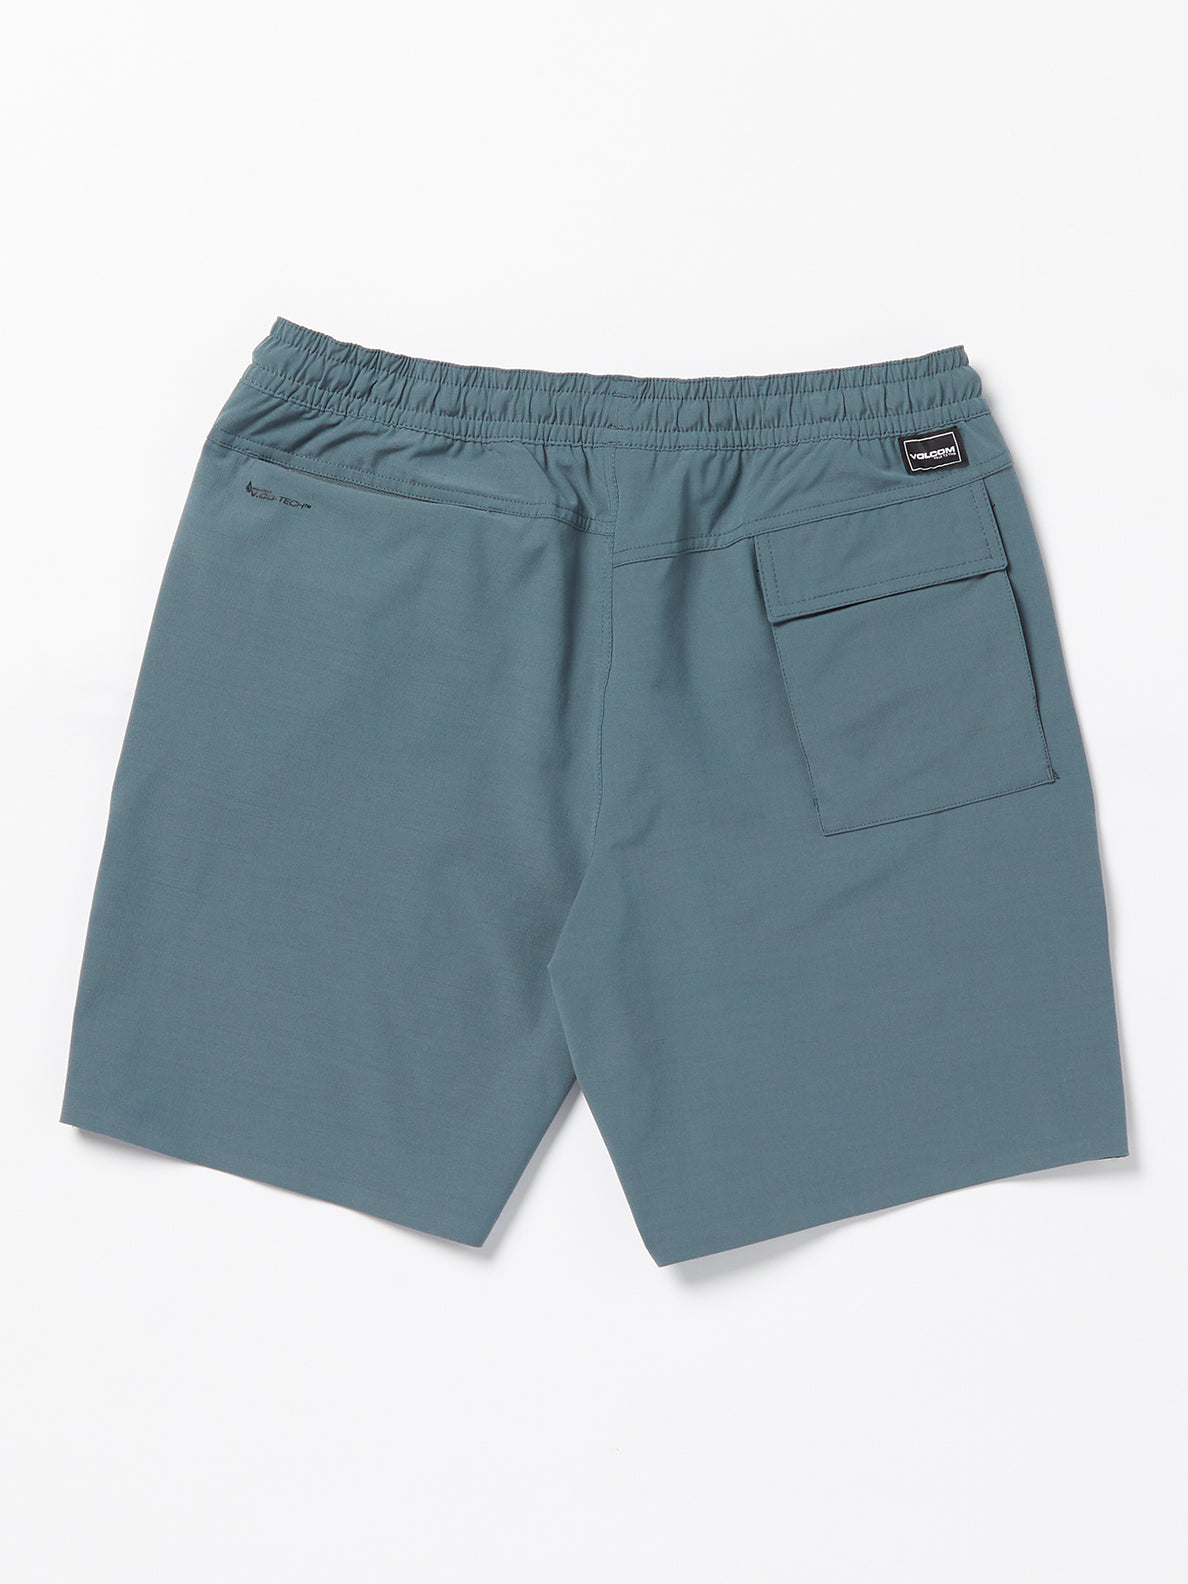 Wrecpack Hybrid Shorts - Dark Slate (A3212305_DST) [B]